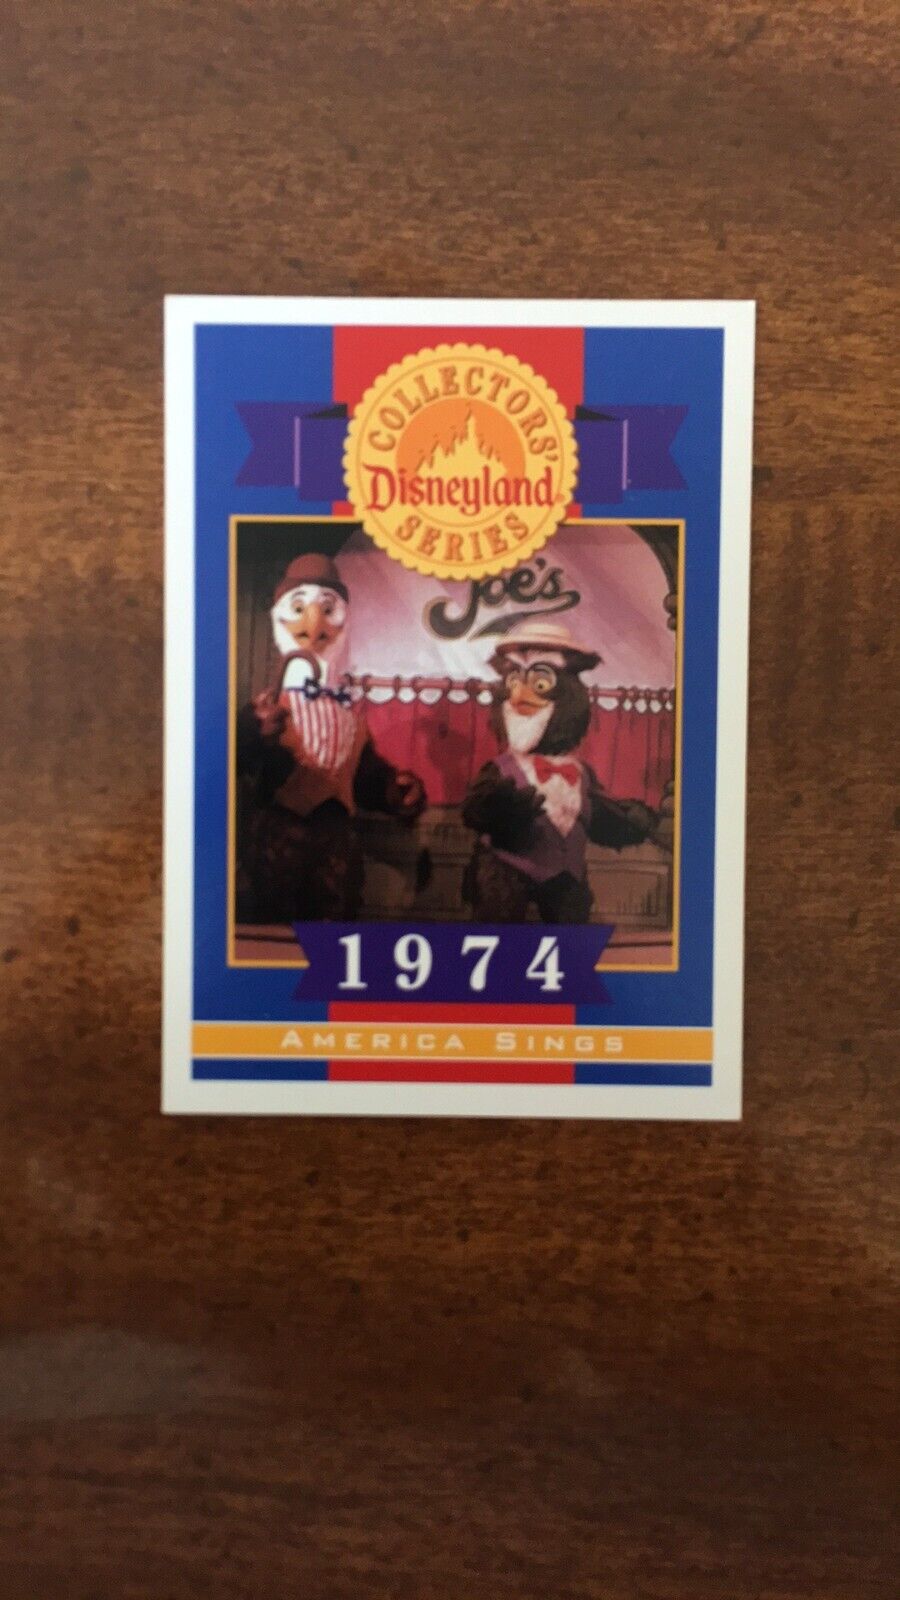 40 Years of Adventure Disneyland Card America Sings 1974 1995 Vintage